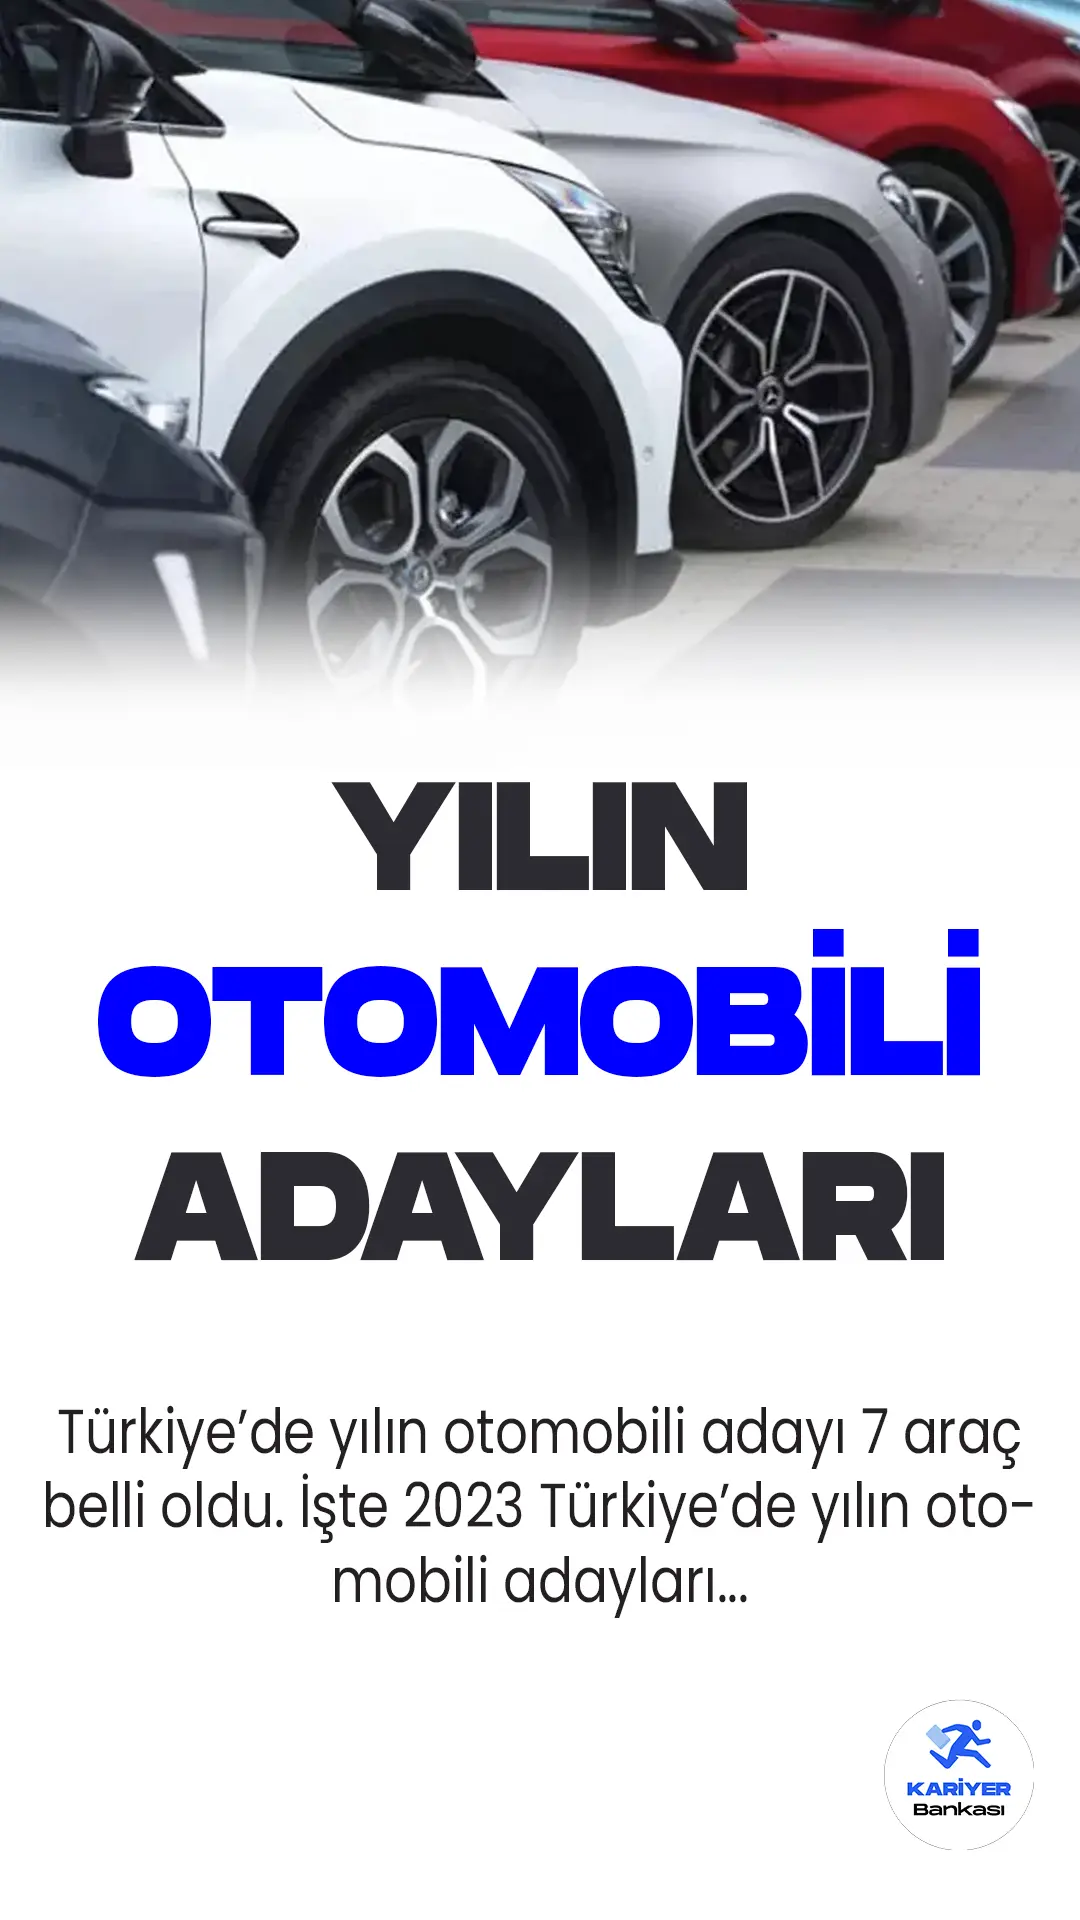 Otomotiv Gazetecileri Derneği (OGD) tarafından düzenlenen prestijli "Türkiye'de Yılın Otomobili" yarışmasının 2023 finalistleri açıklandı.